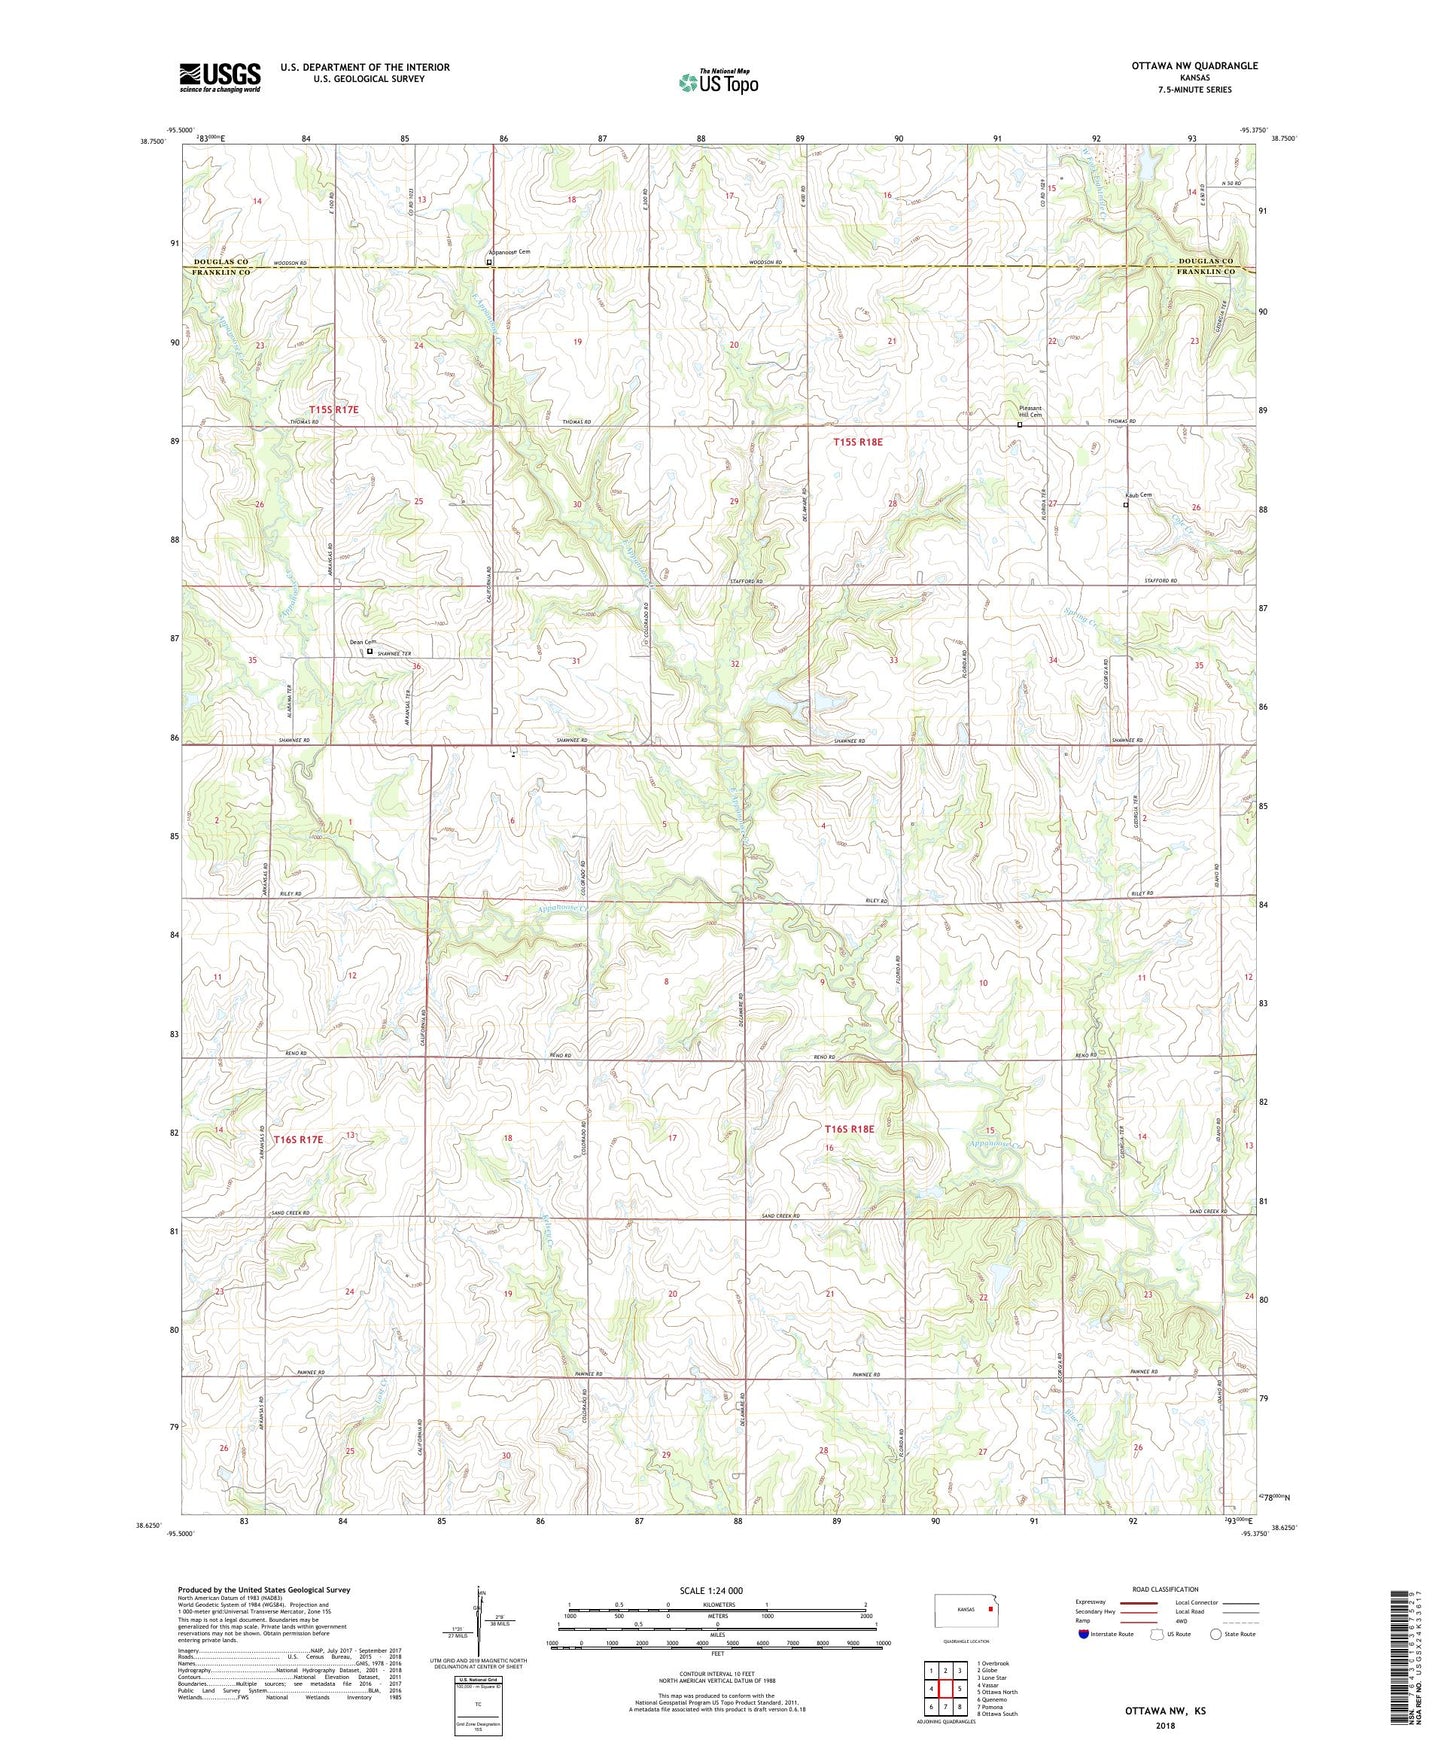 Ottawa NW Kansas US Topo Map Image